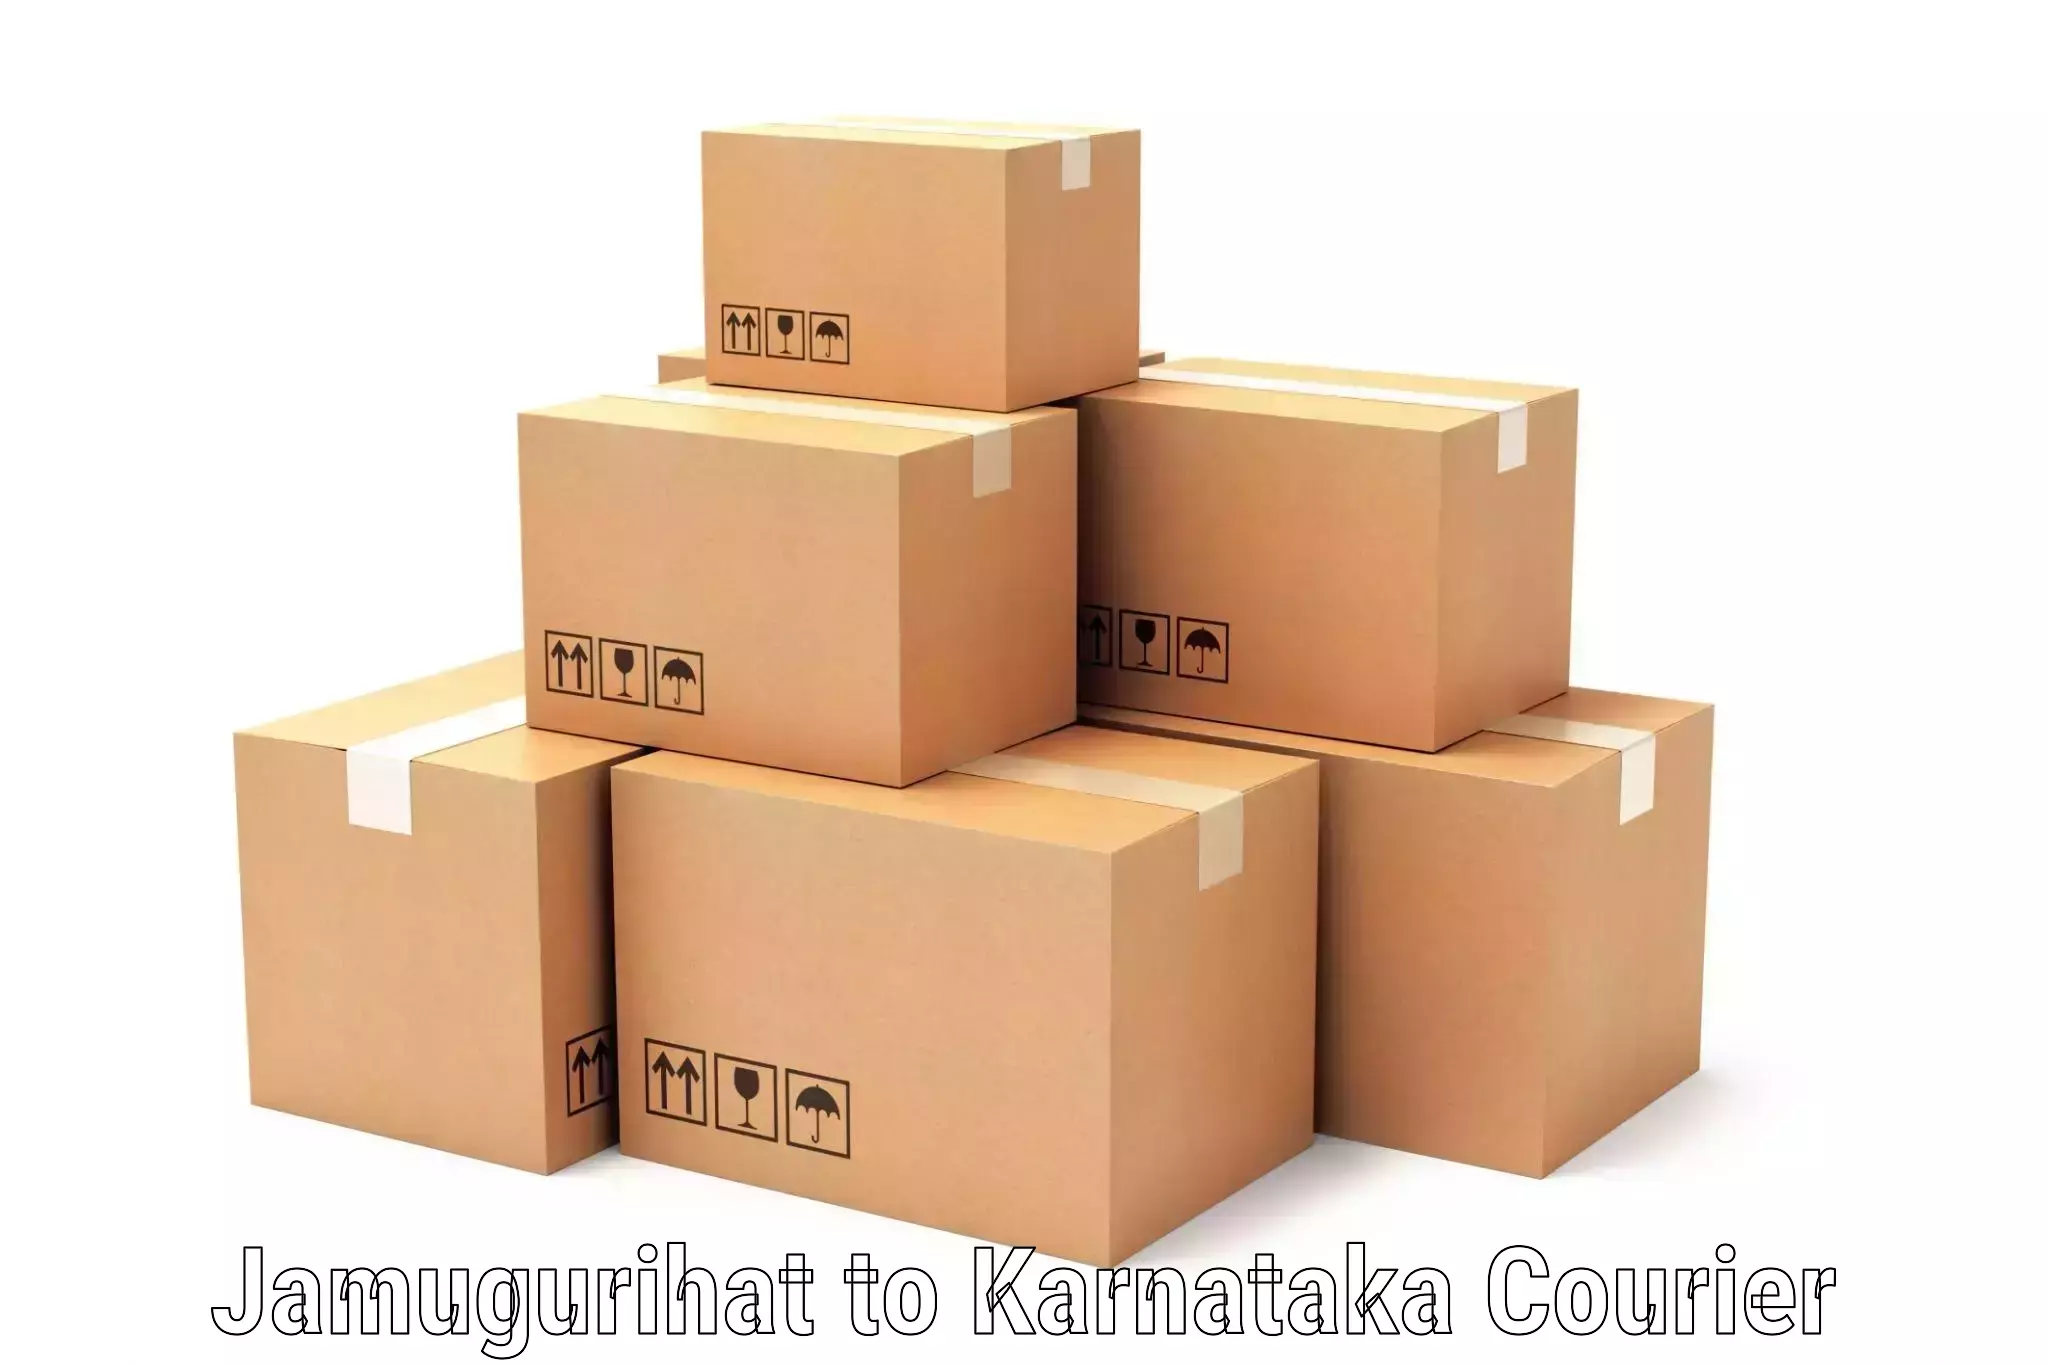 Secure packaging Jamugurihat to Karnataka